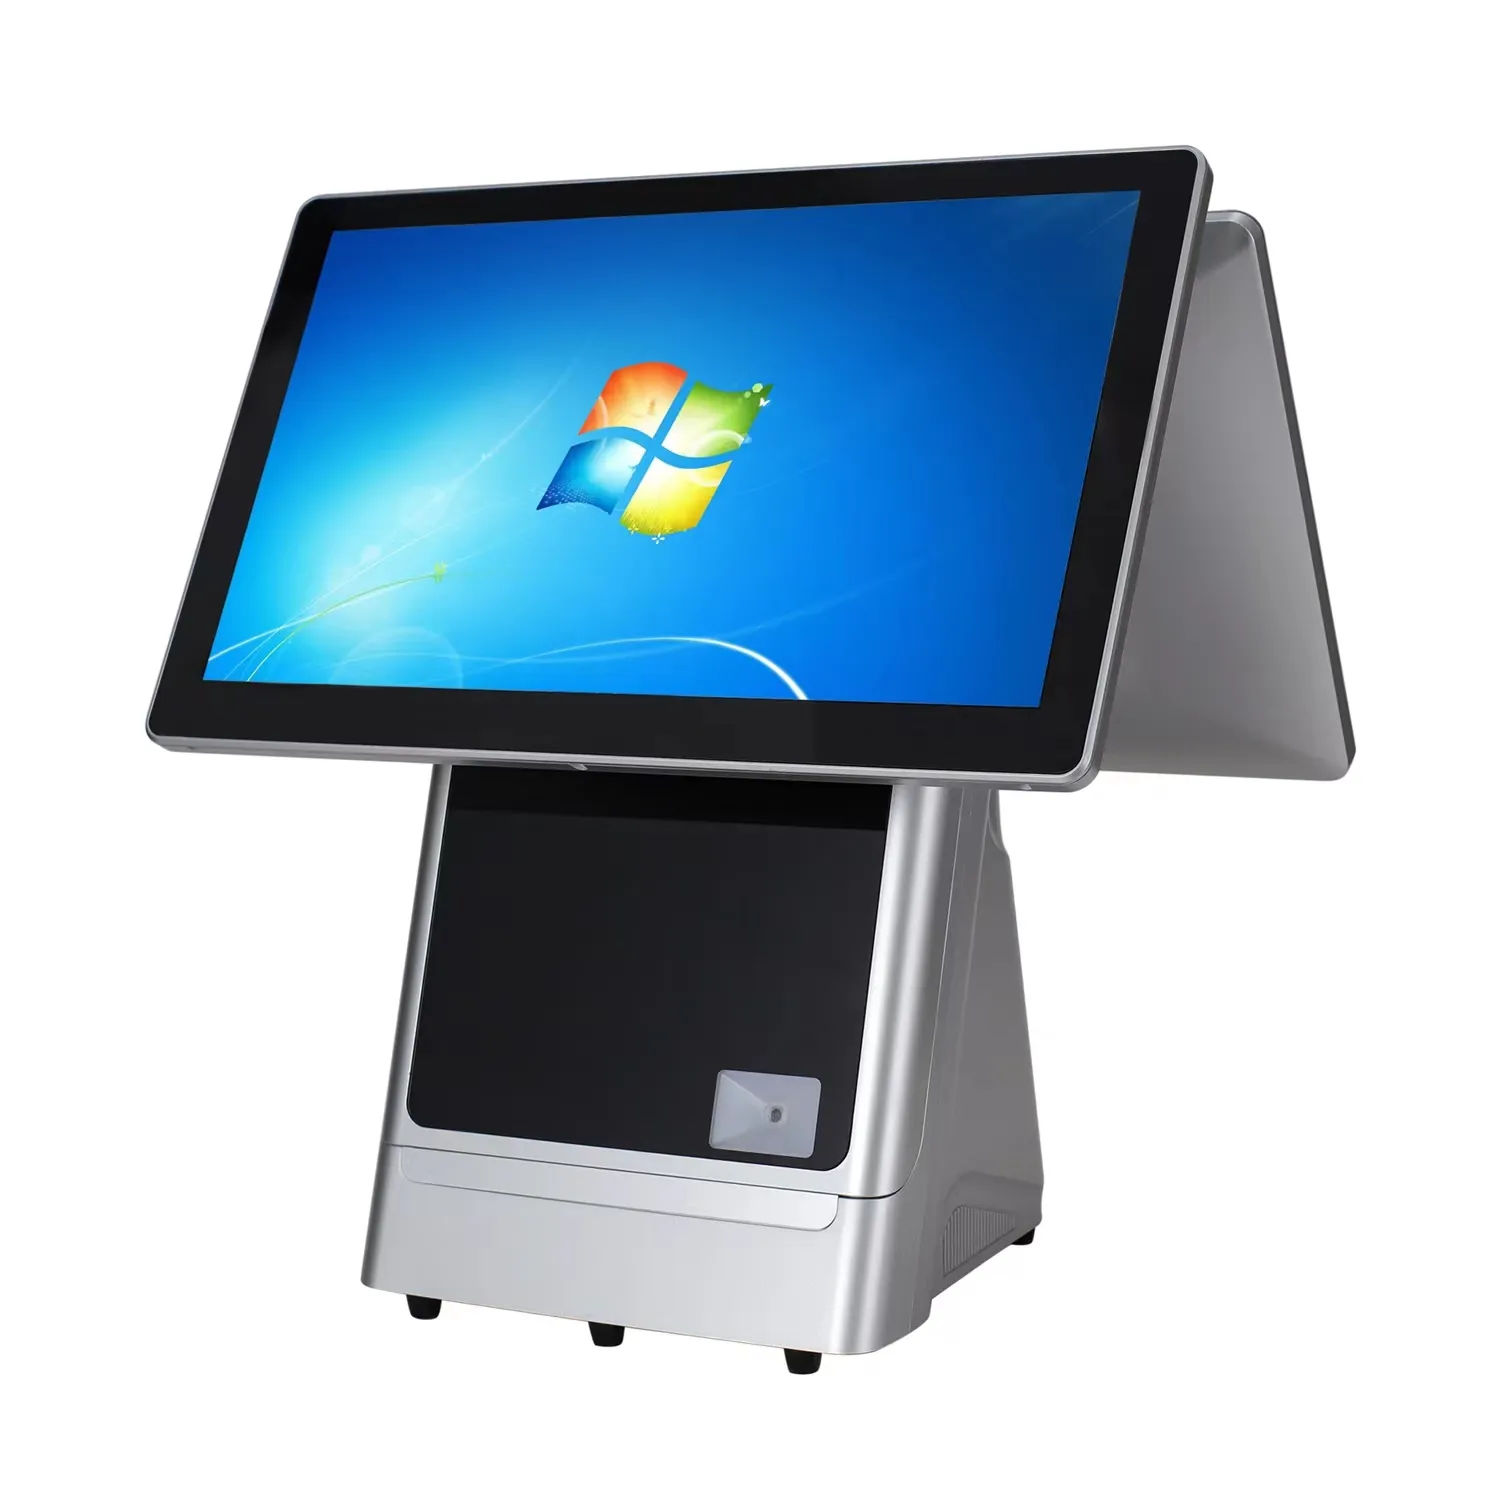 WindowsデュアルスクリーンデスクトップおよびポータブルPOS端末レジオールインワンPOSシステム自己注文システムPOSシステム